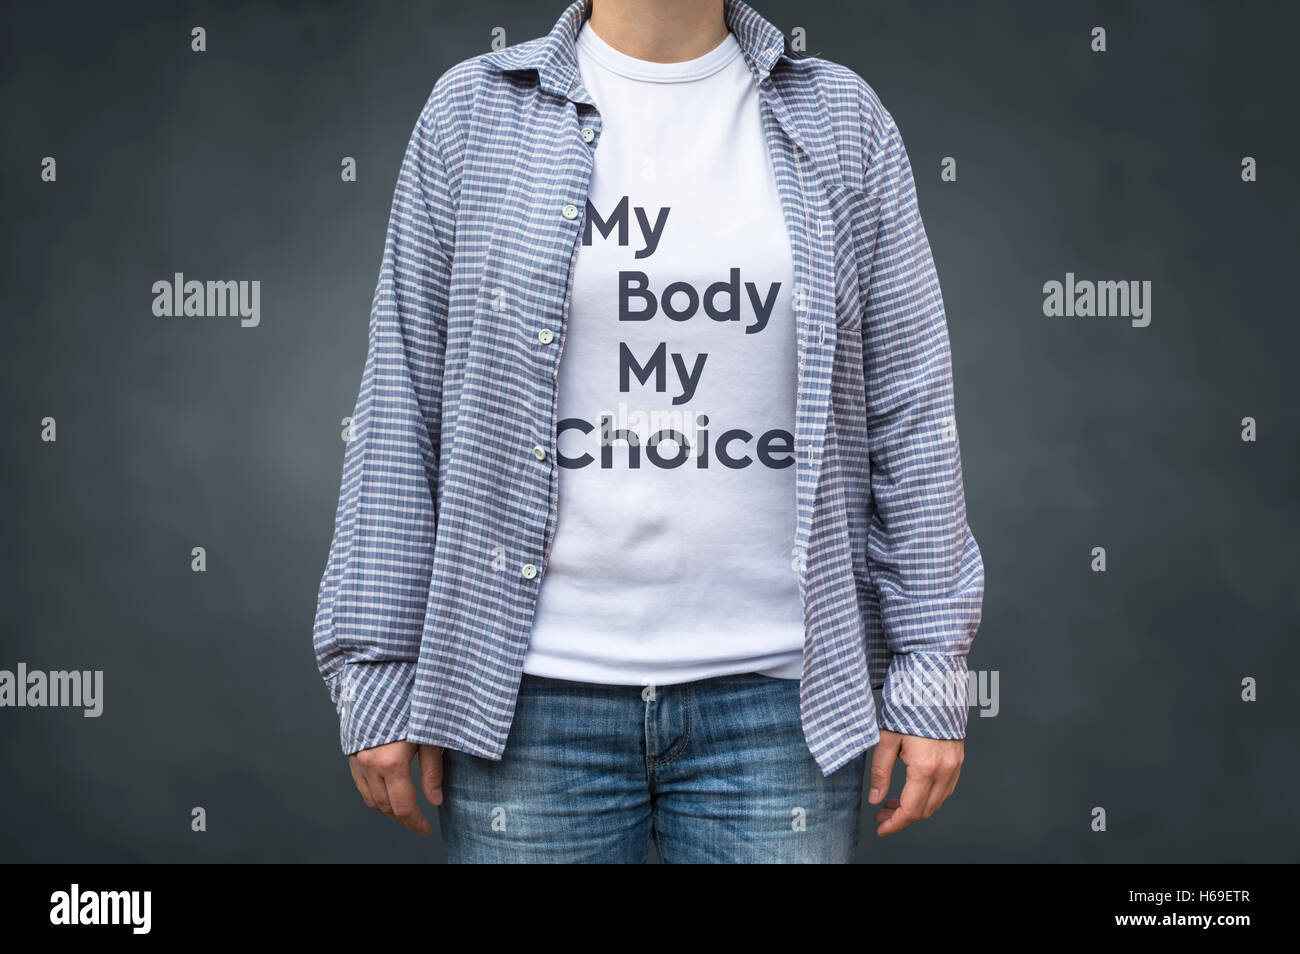 Mein Körper, meine Wahl Eintrag am weißen T-shirt. Selektiven Fokus. Stockfoto